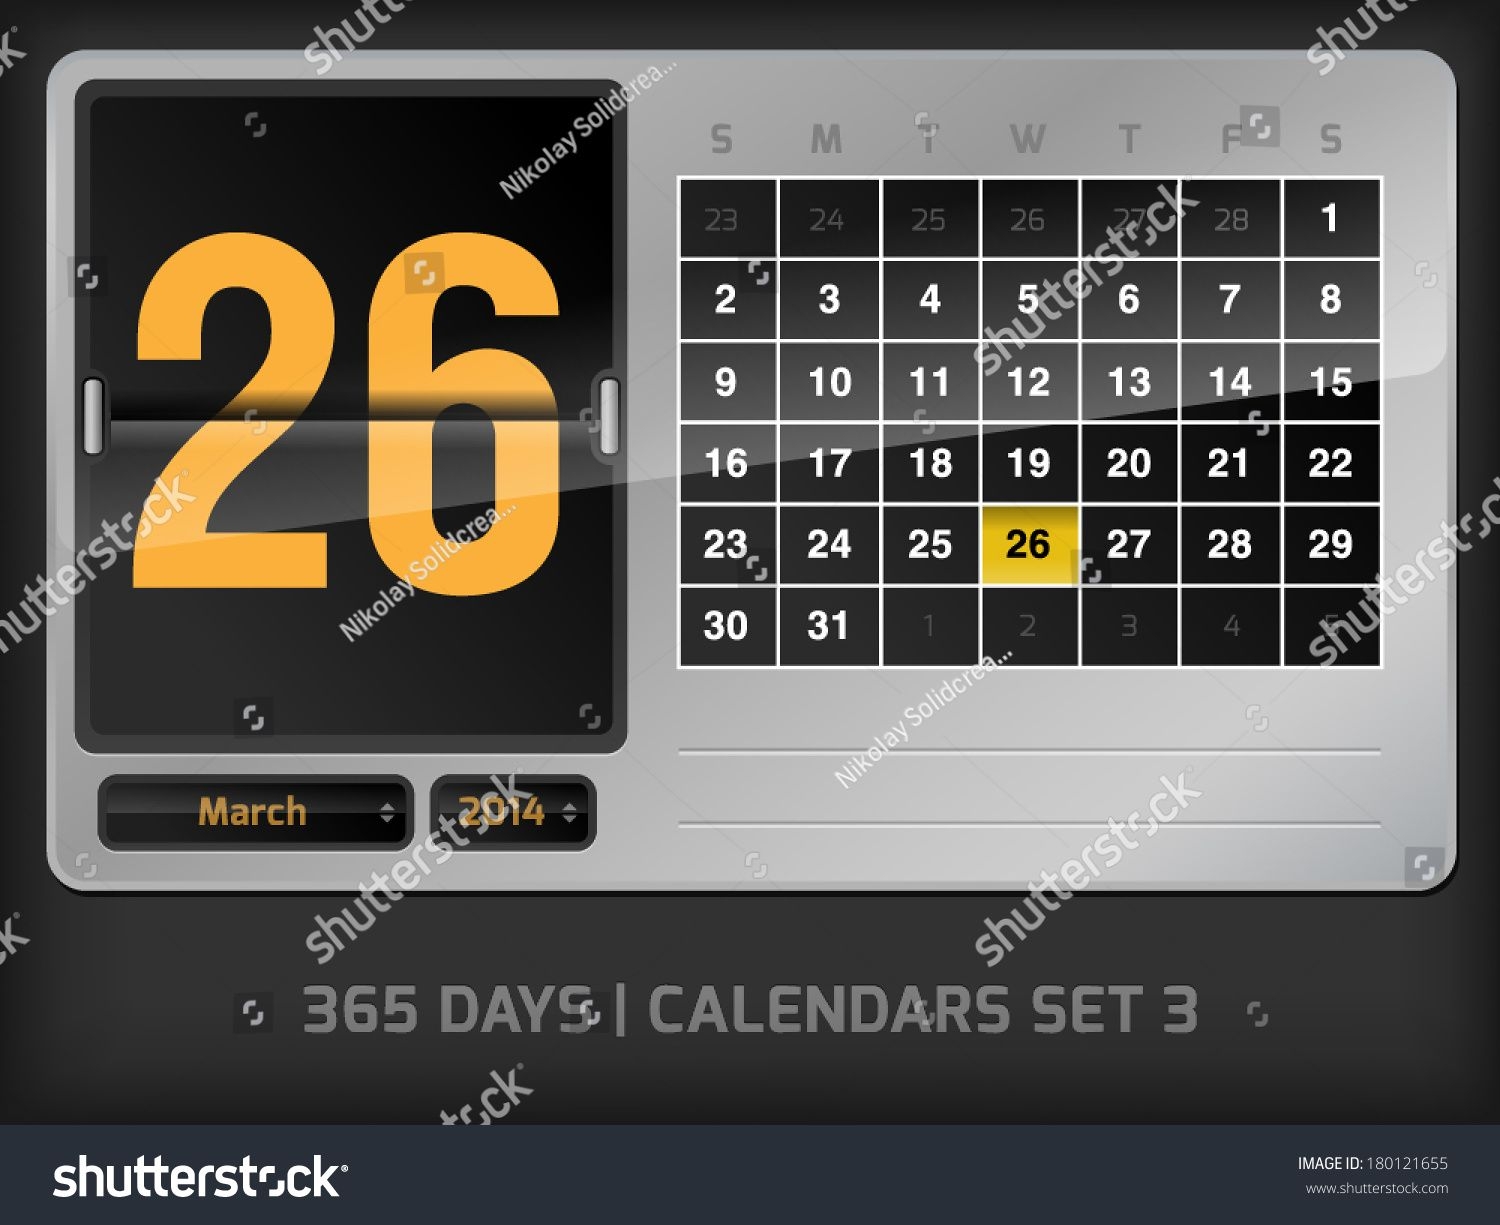 March 26 Daily Vector Counter Calendar Stock Image